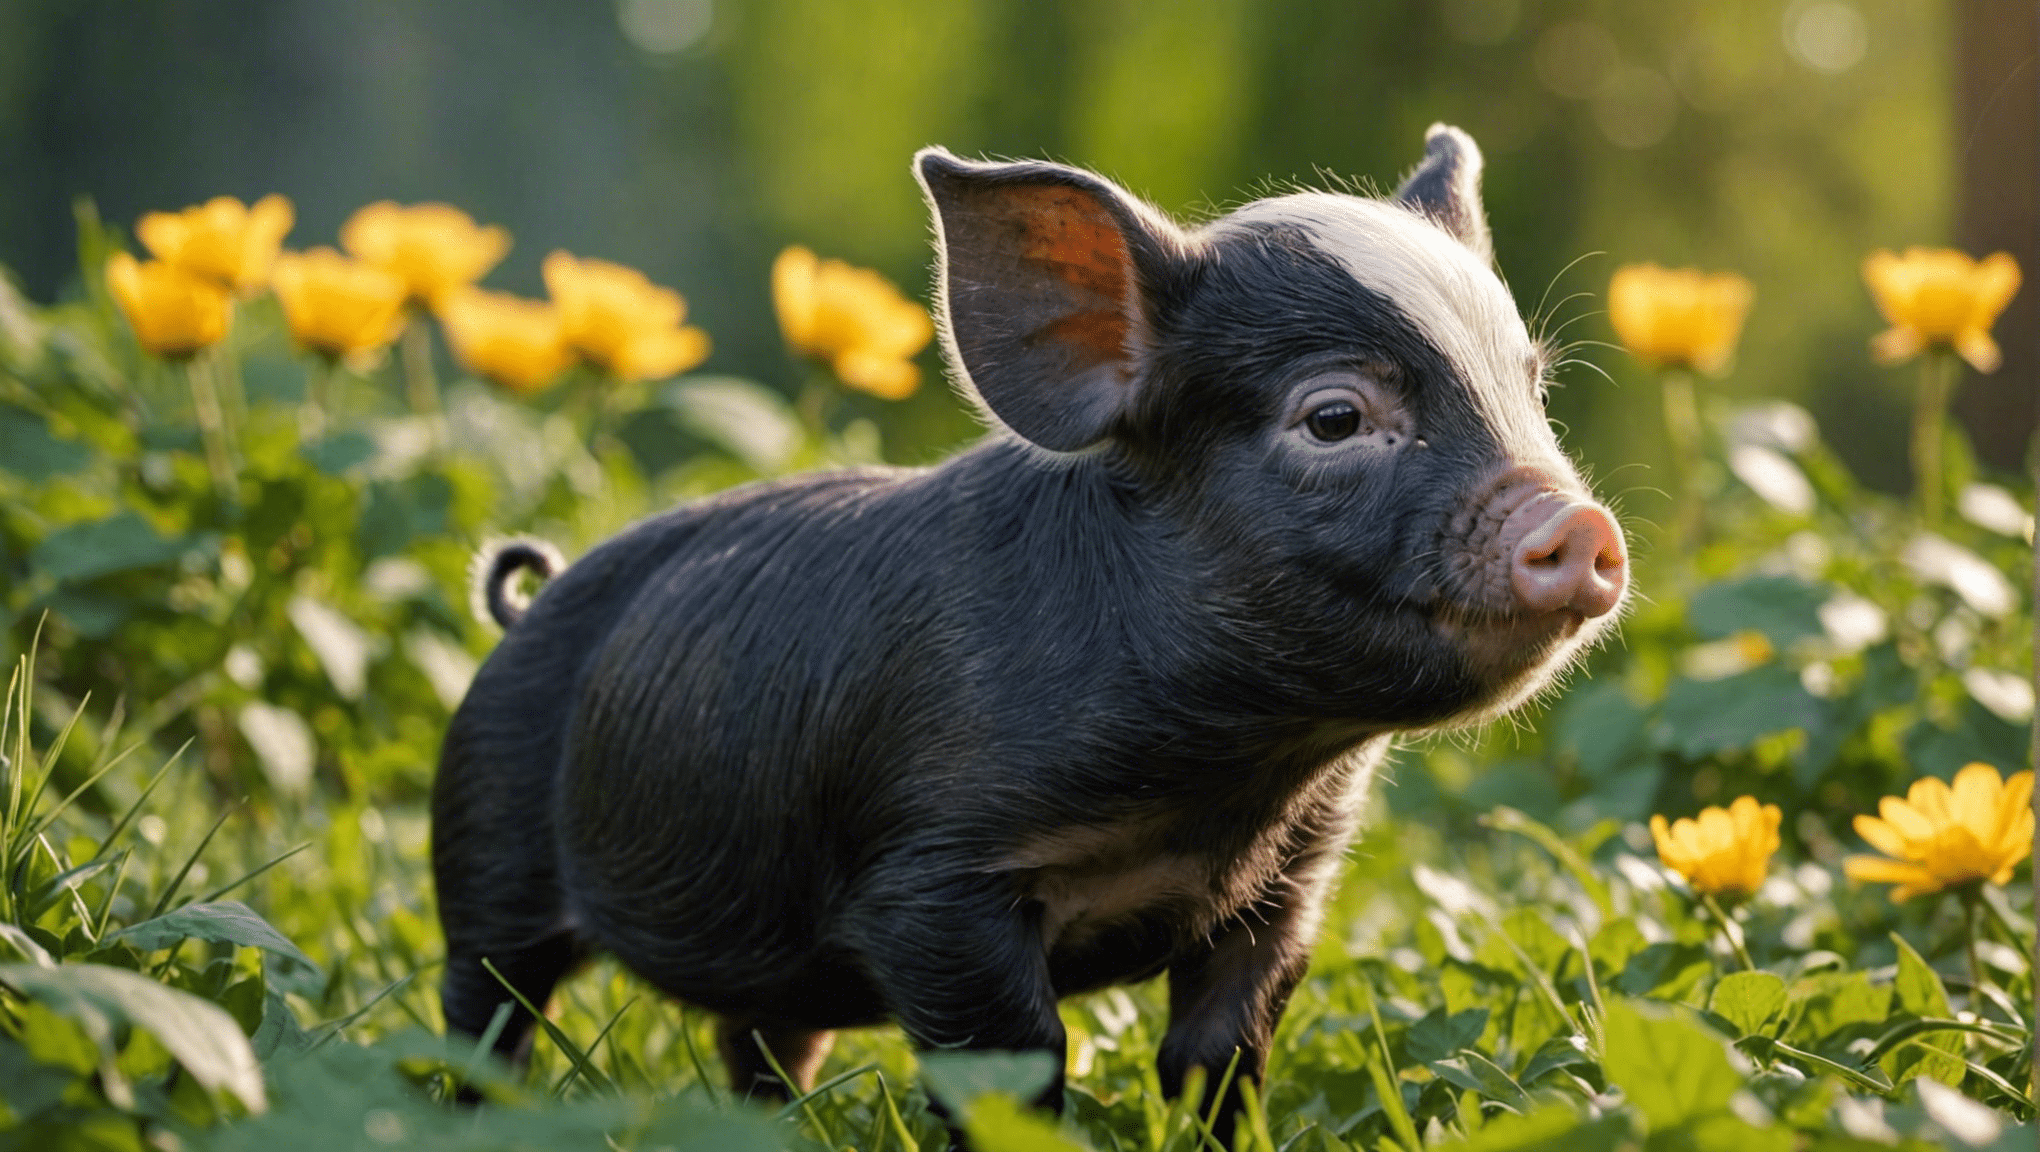 hitta bedårande och unika namn för nyfödda smågrisar med vår lista över söta namn för smågrisar. upptäck det perfekta namnet för din lilla gris!